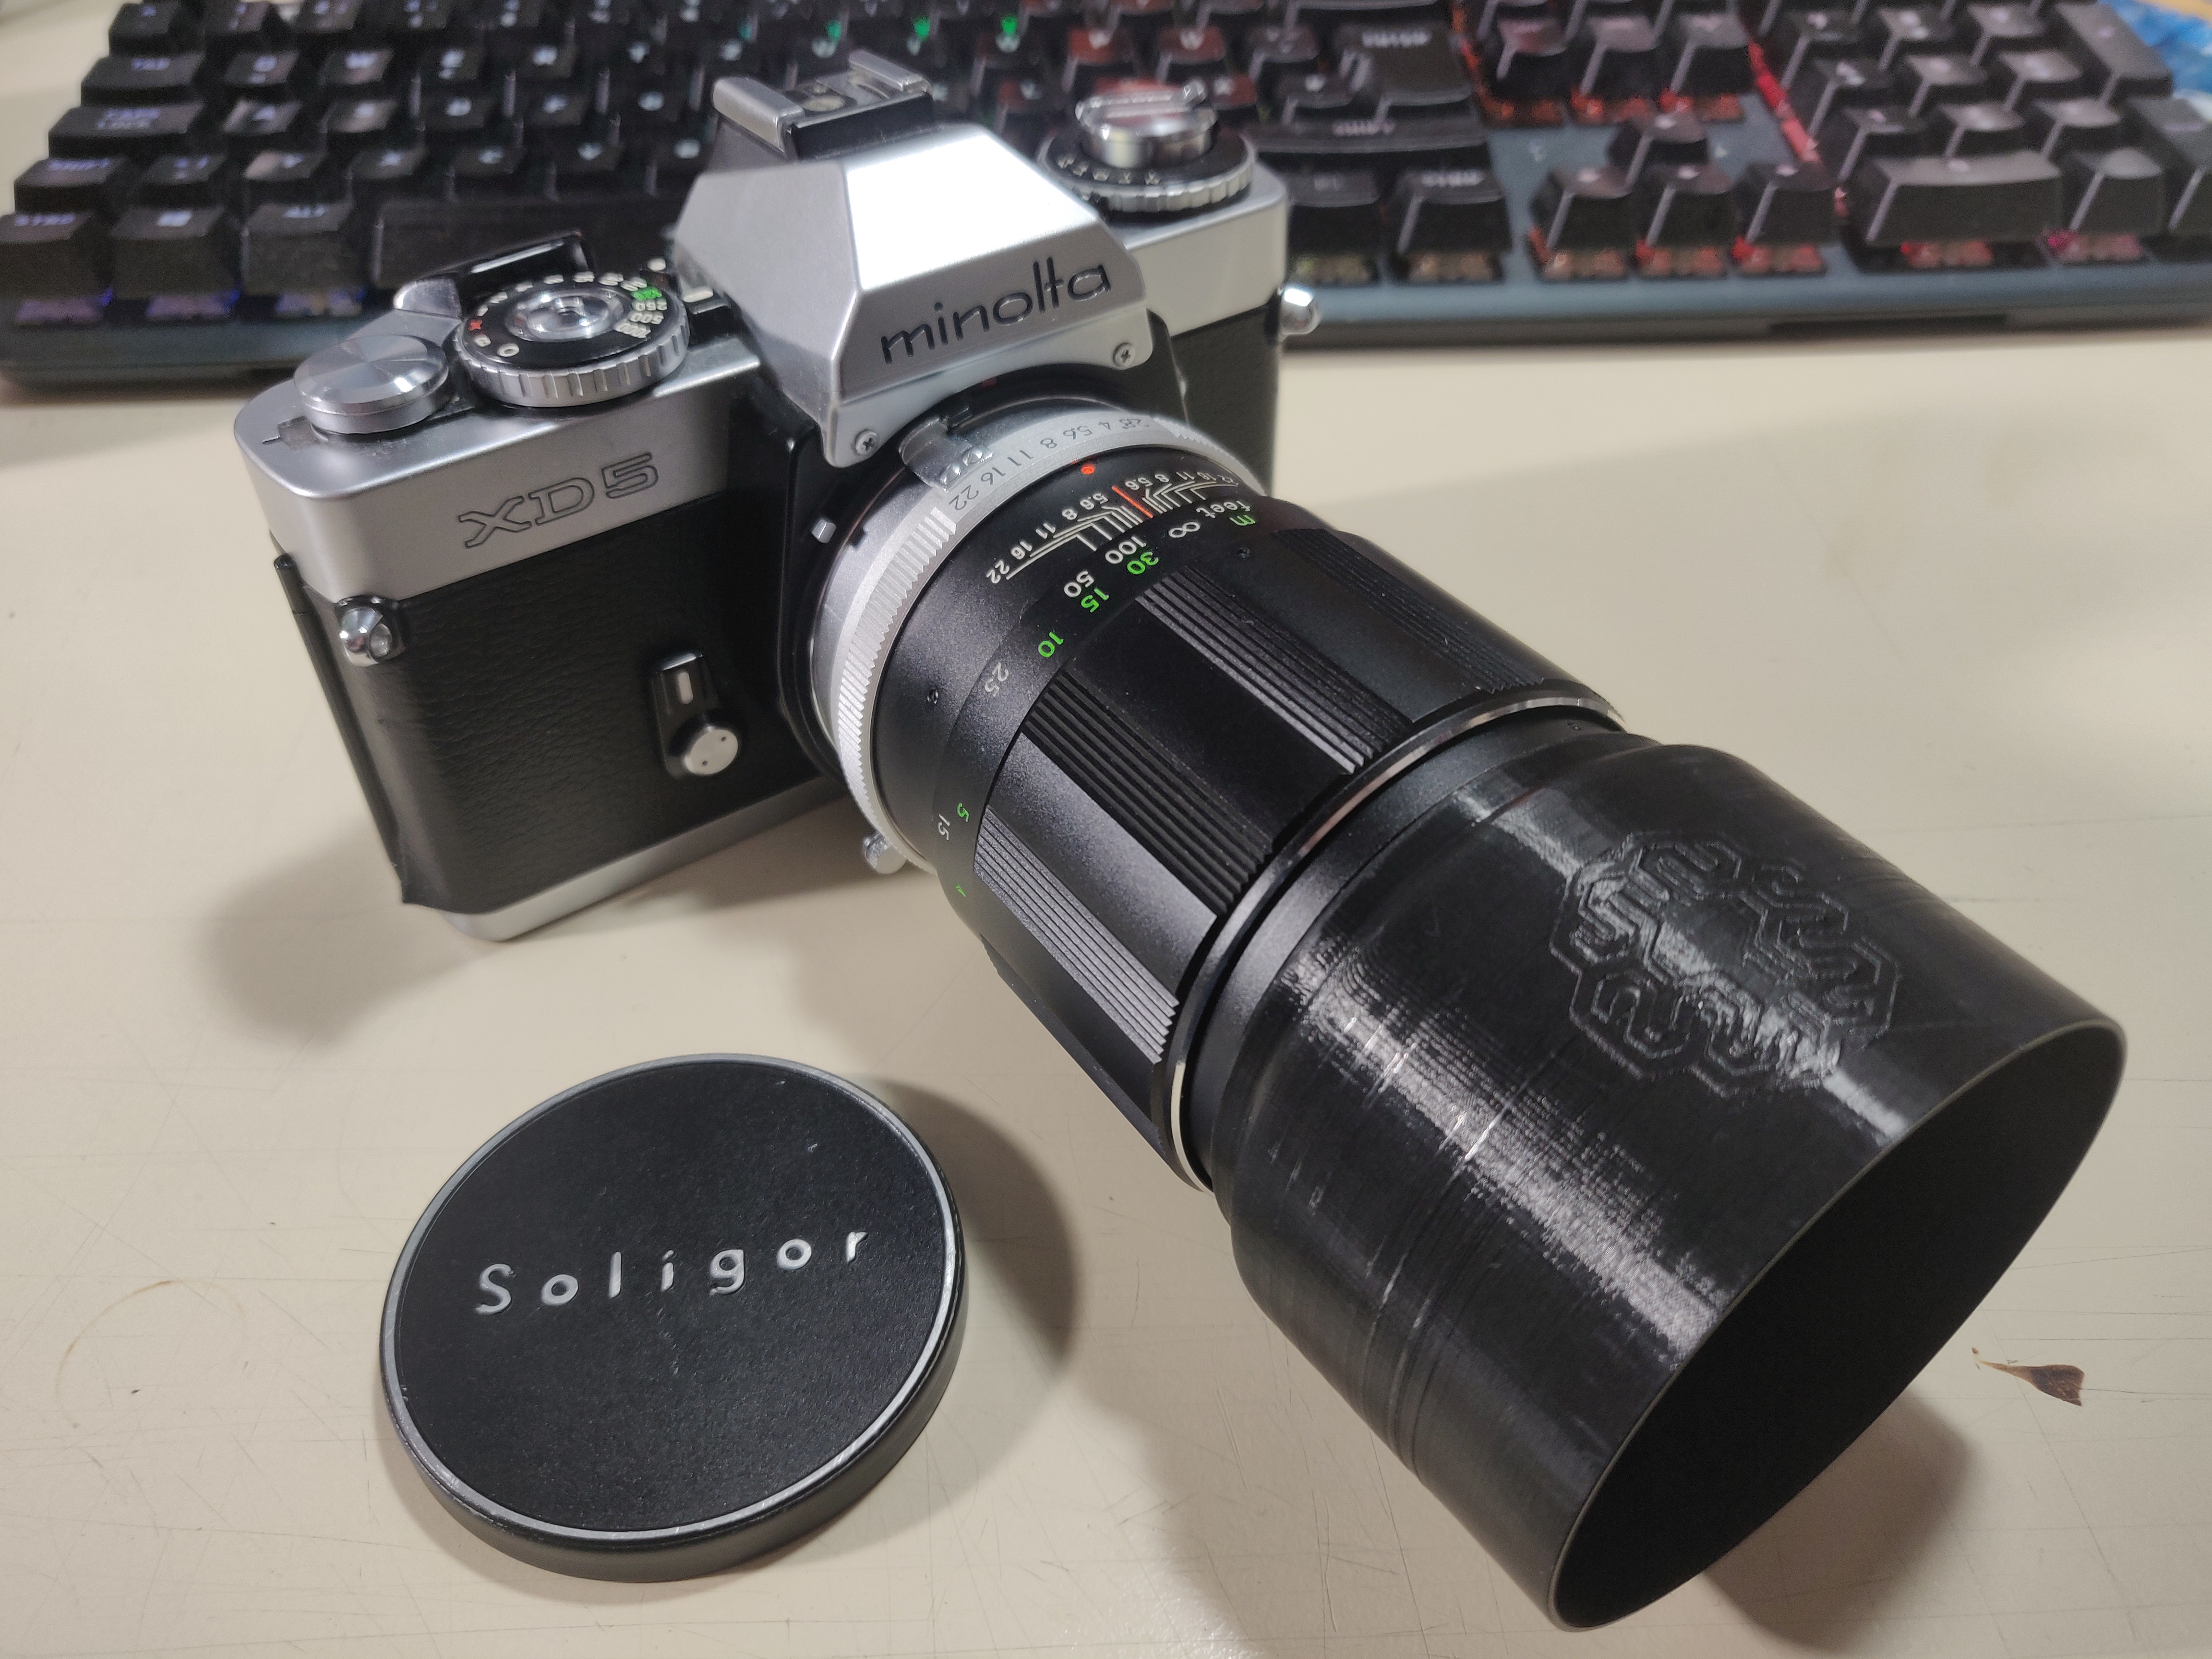 Lens hood fits Soligor 135mm lens